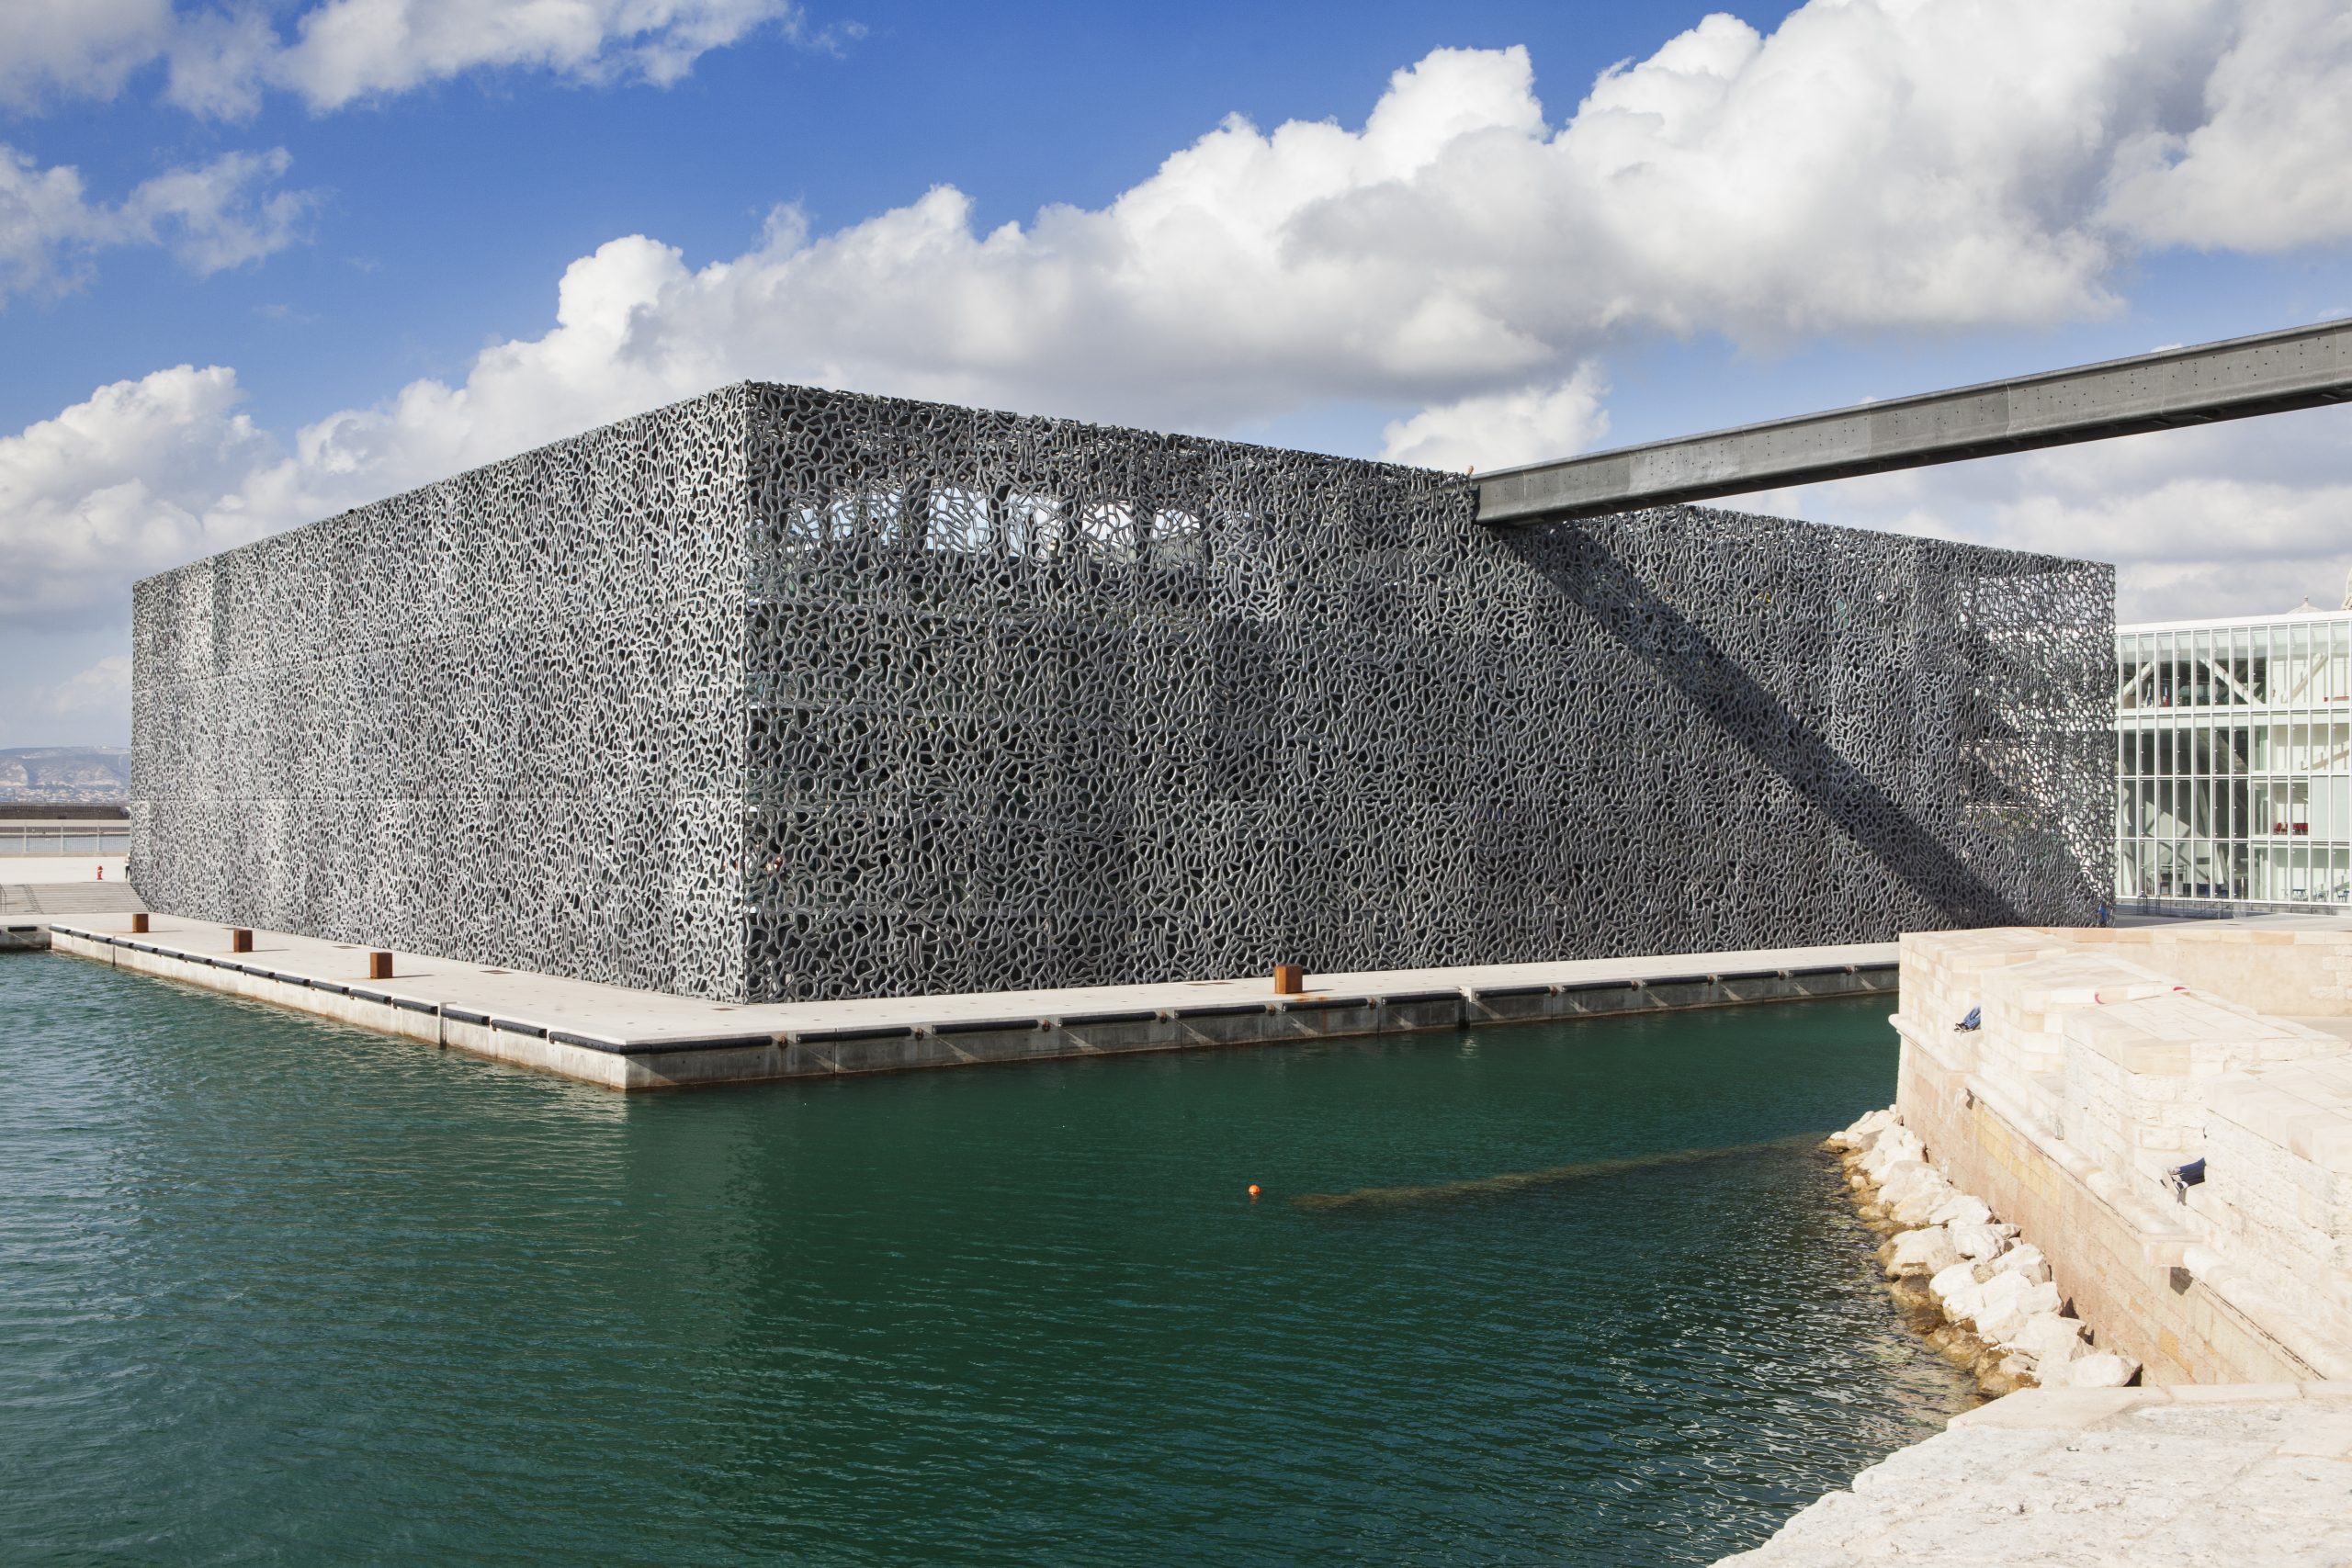 Chef d'oeuvre d'architecture à Marseille, le MuCem Musée des civilisations Européennes et Méditerranéennes